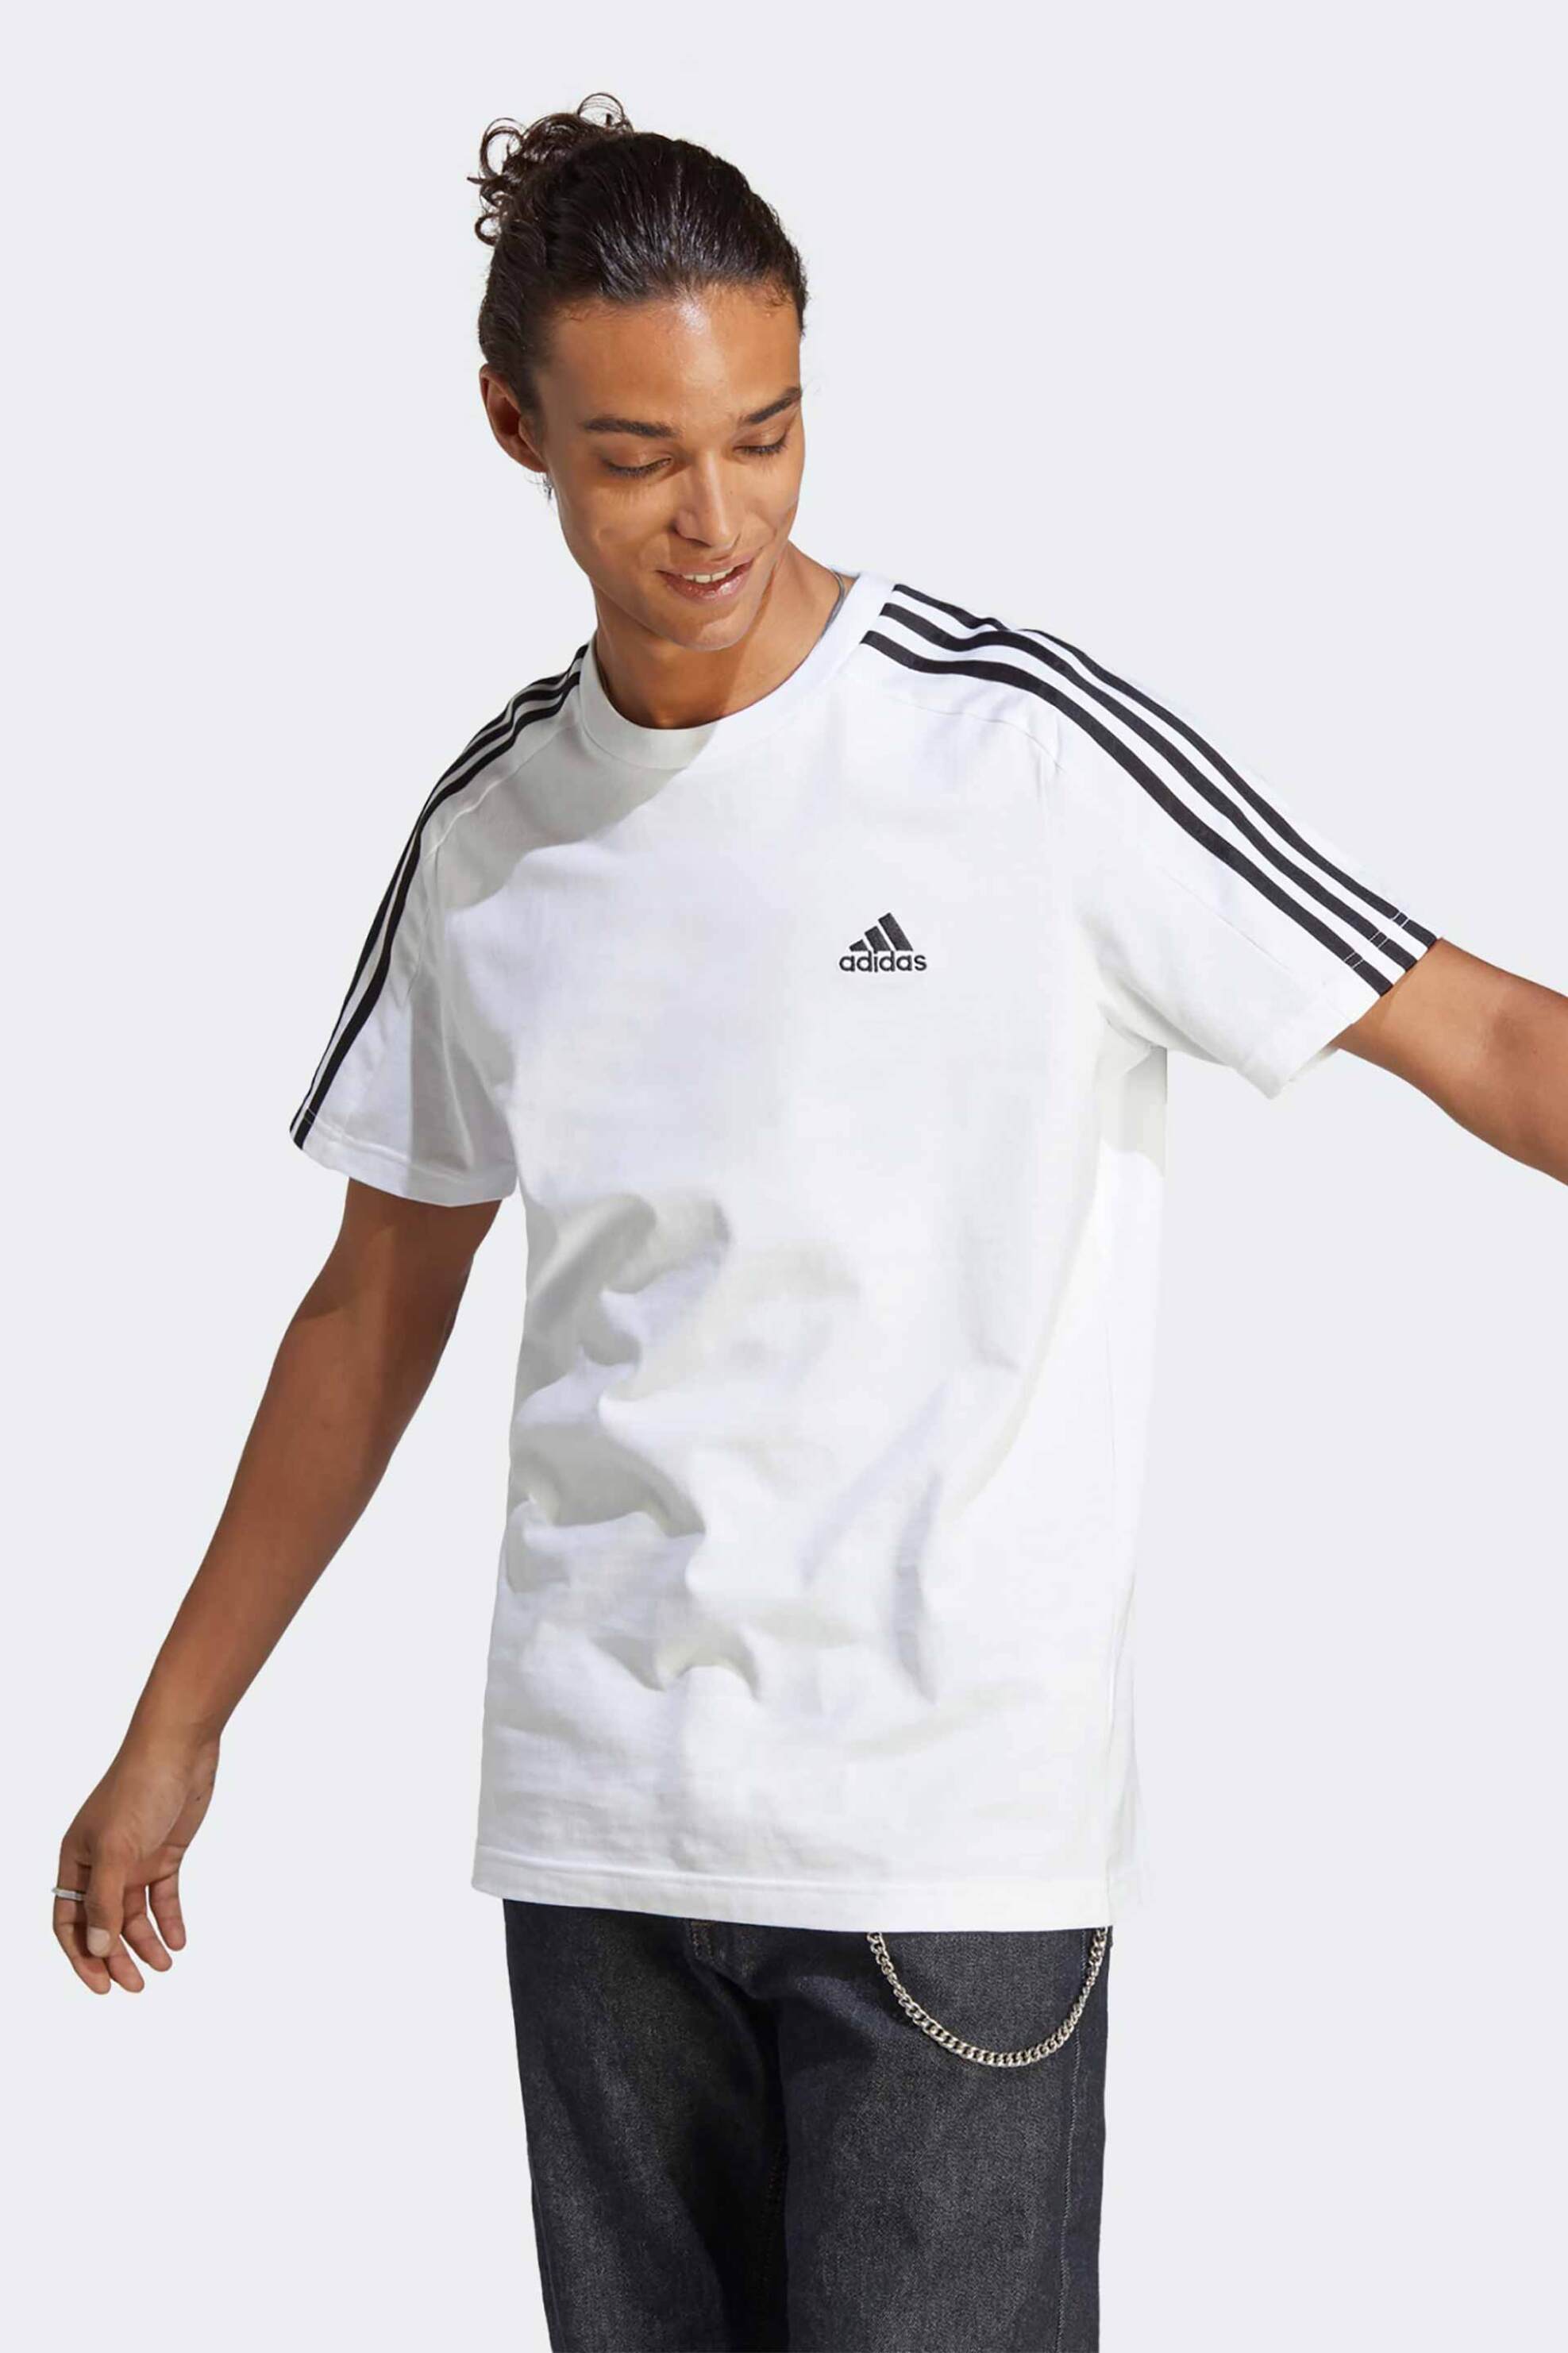 Ανδρική Μόδα > Ανδρικά Αθλητικά > Ανδρικά Αθλητικά Ρούχα > Αθλητικές Μπλούζες > Ανδρικά Αθλητικά T-Shirts Adidas ανδρικό αθλητικό βαμβακερό T-shirt με trademark ρίγες στα μανίκια "Essentials" - IC9336 Λευκό